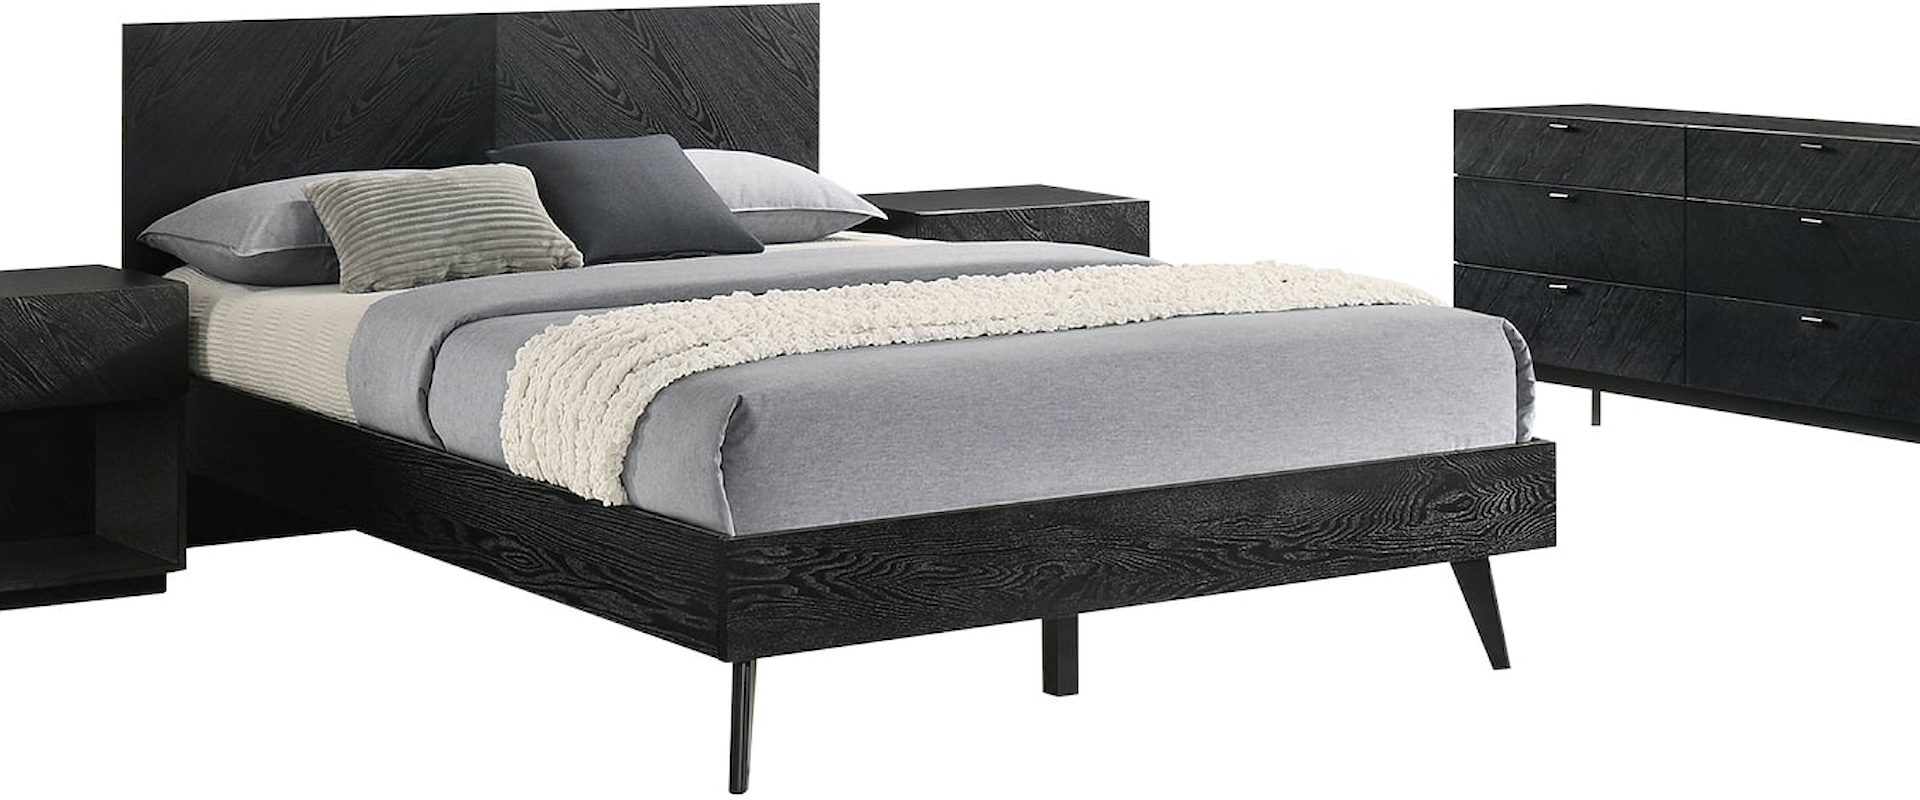 Contemporary Queen 4-Piece Wood Bedroom Set